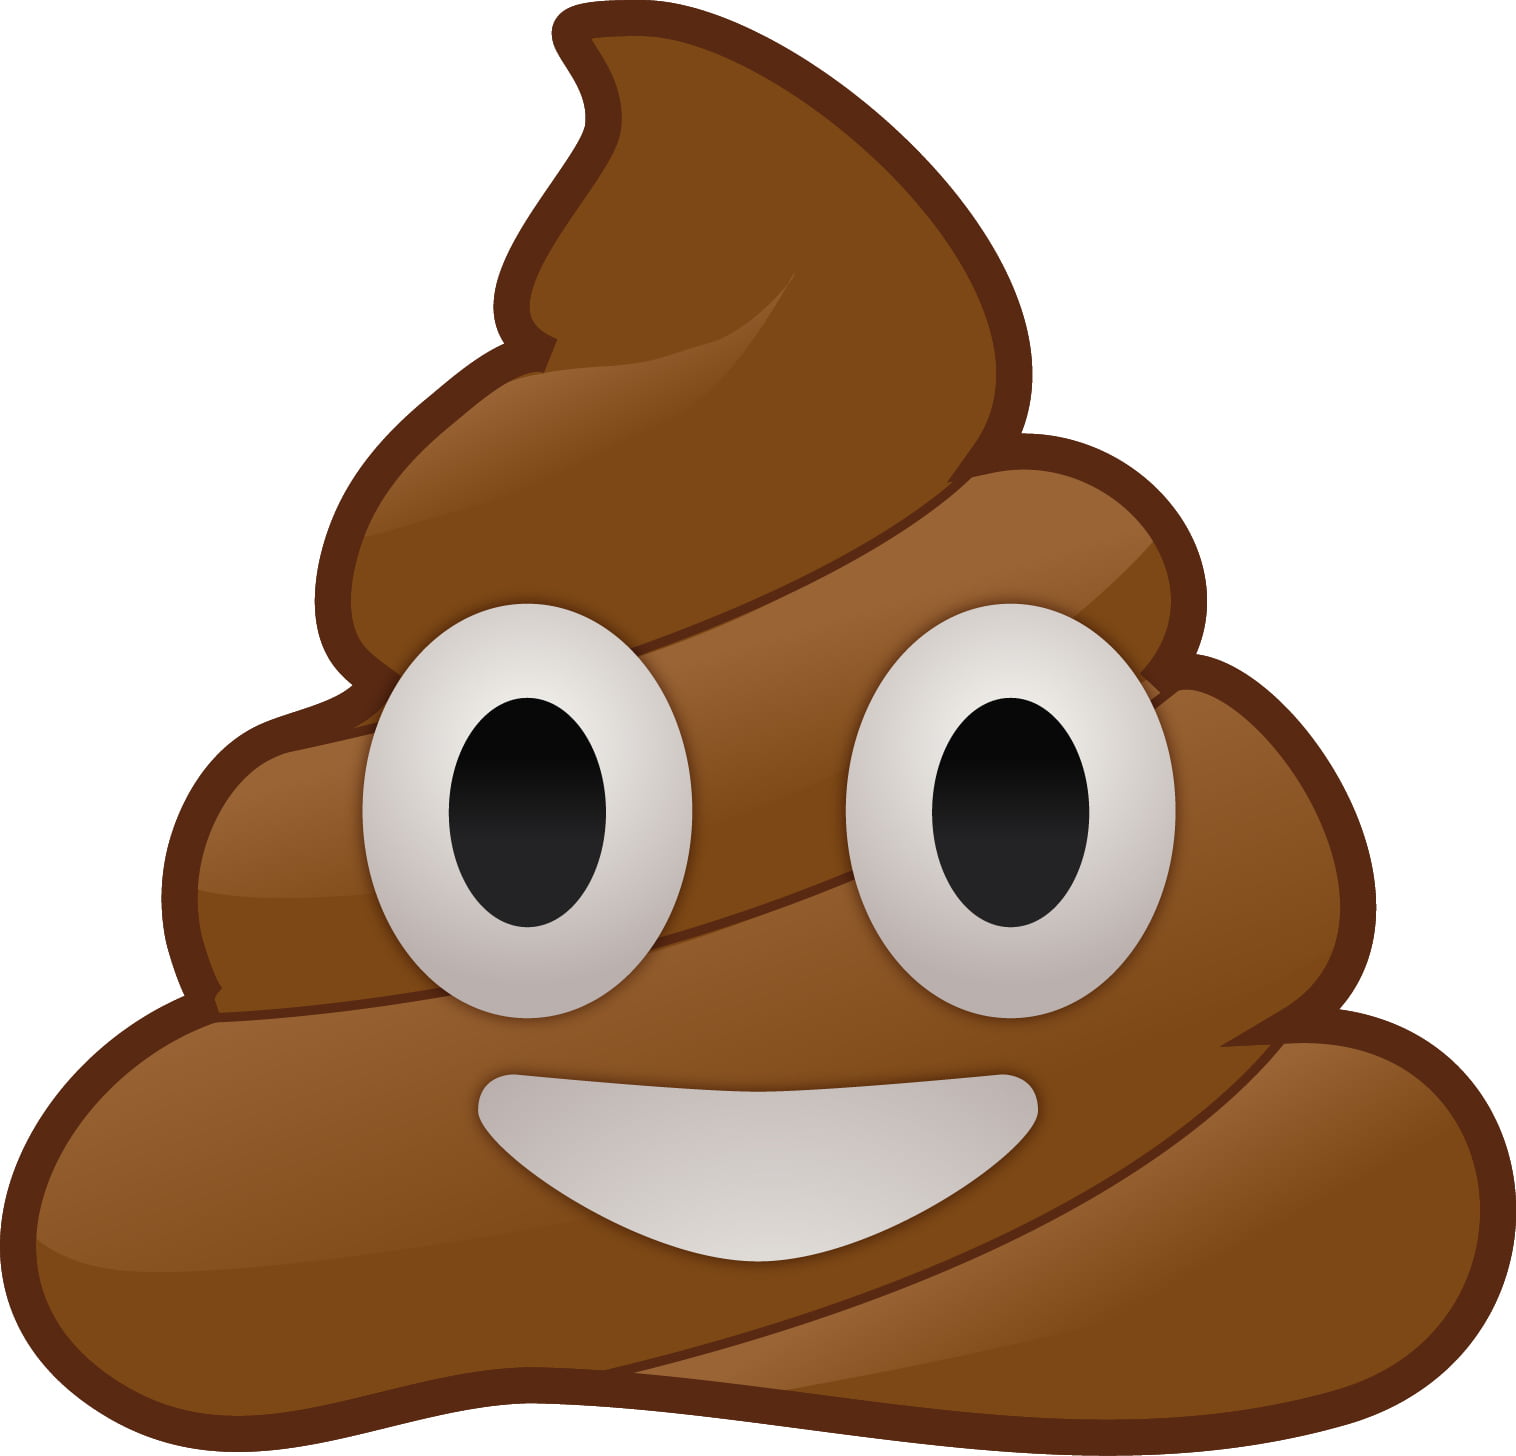 poop emoji clipart - photo #32